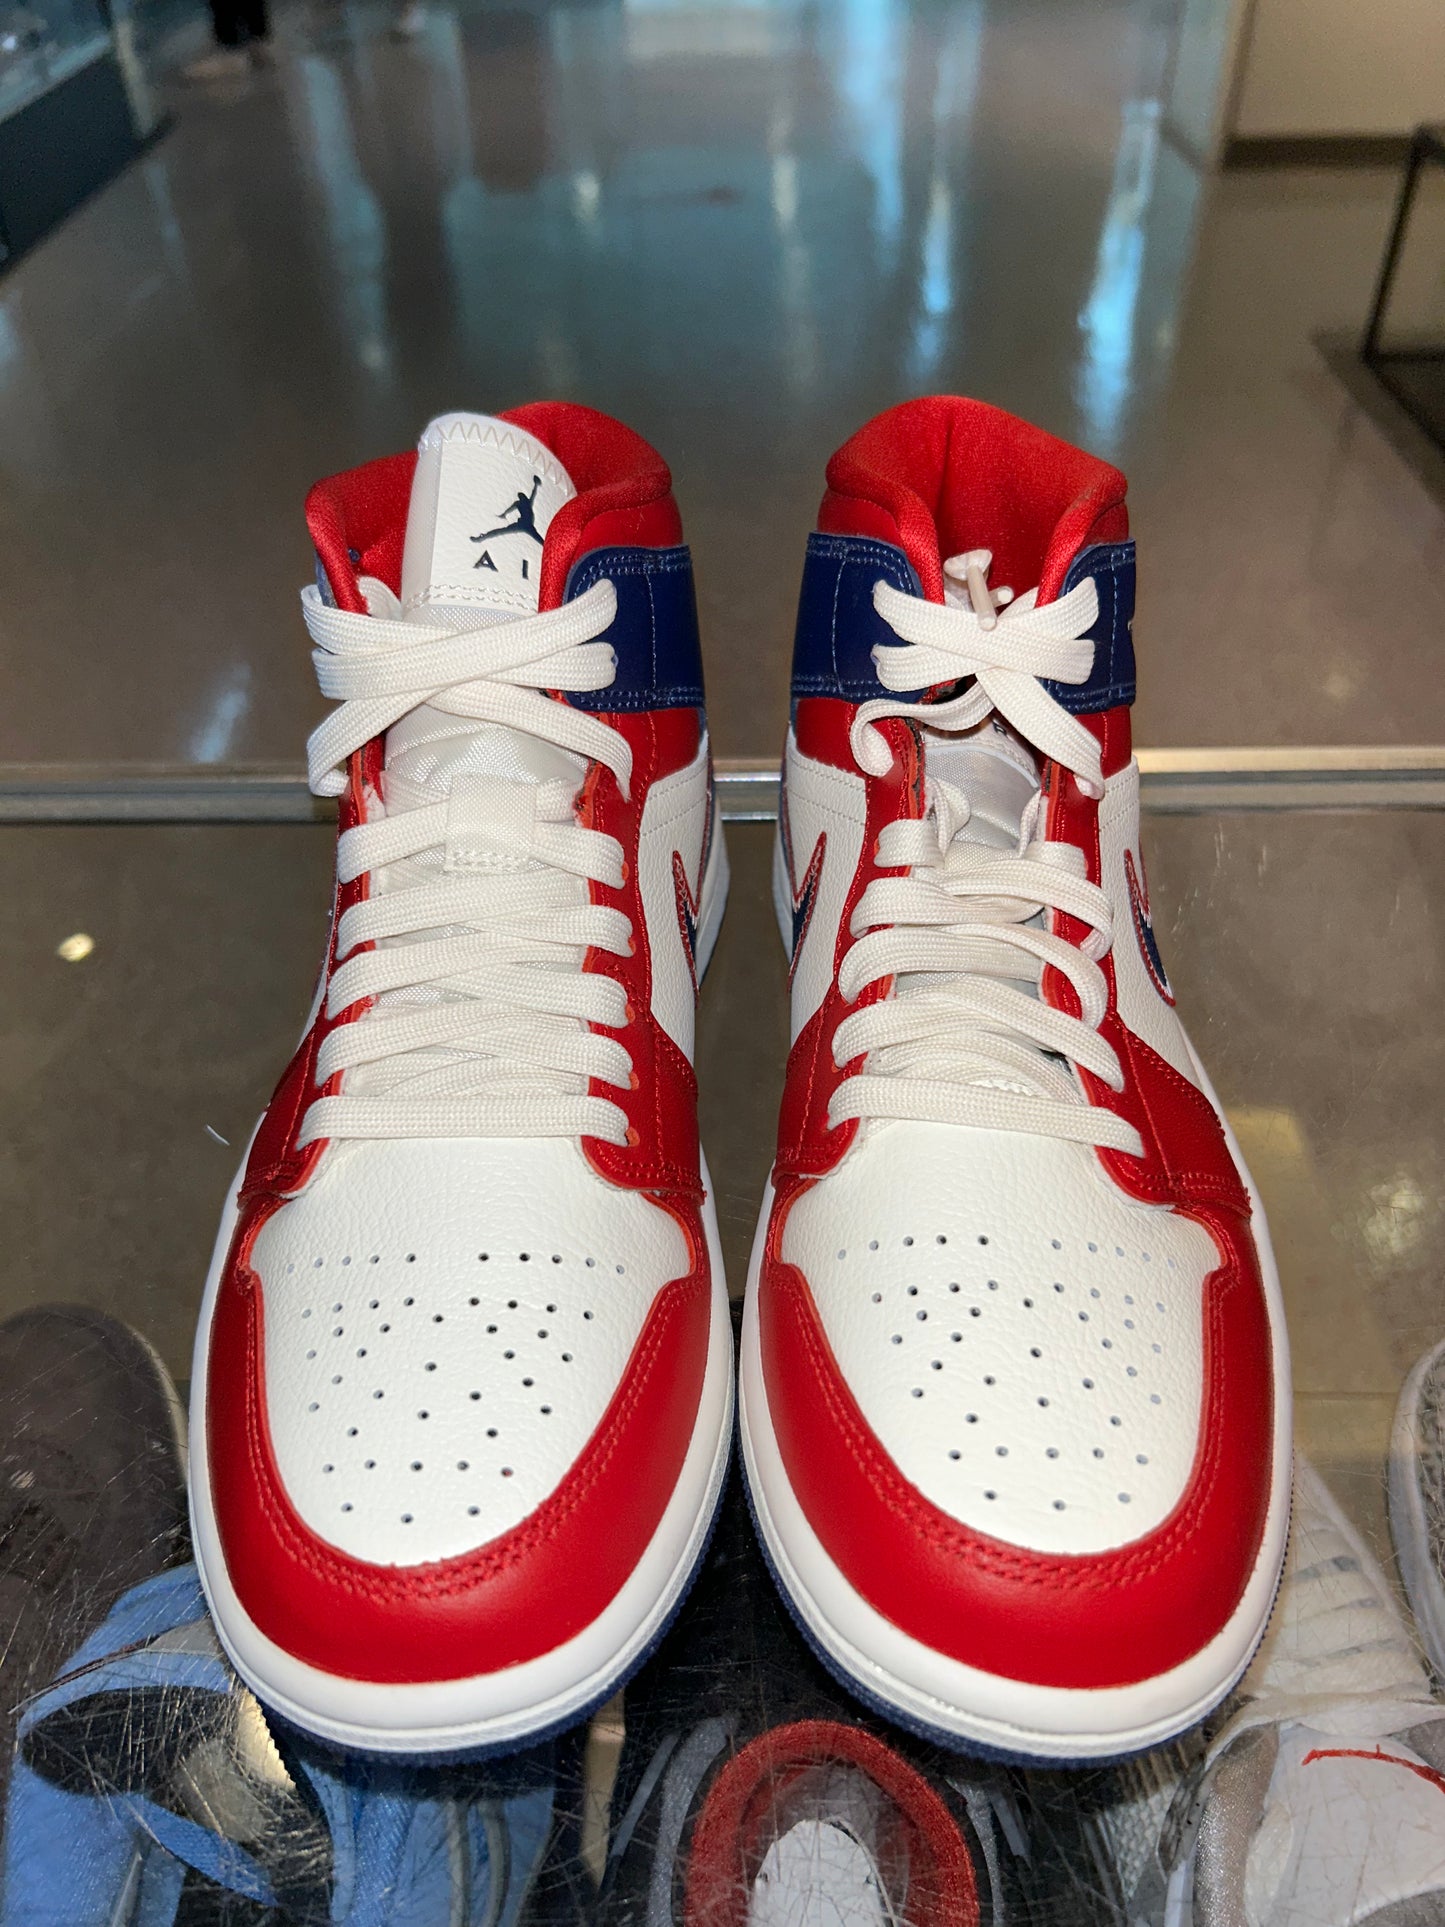 Size 4.5 (6W) Air Jordan 1 Mid “USA” Brand New (Mall)